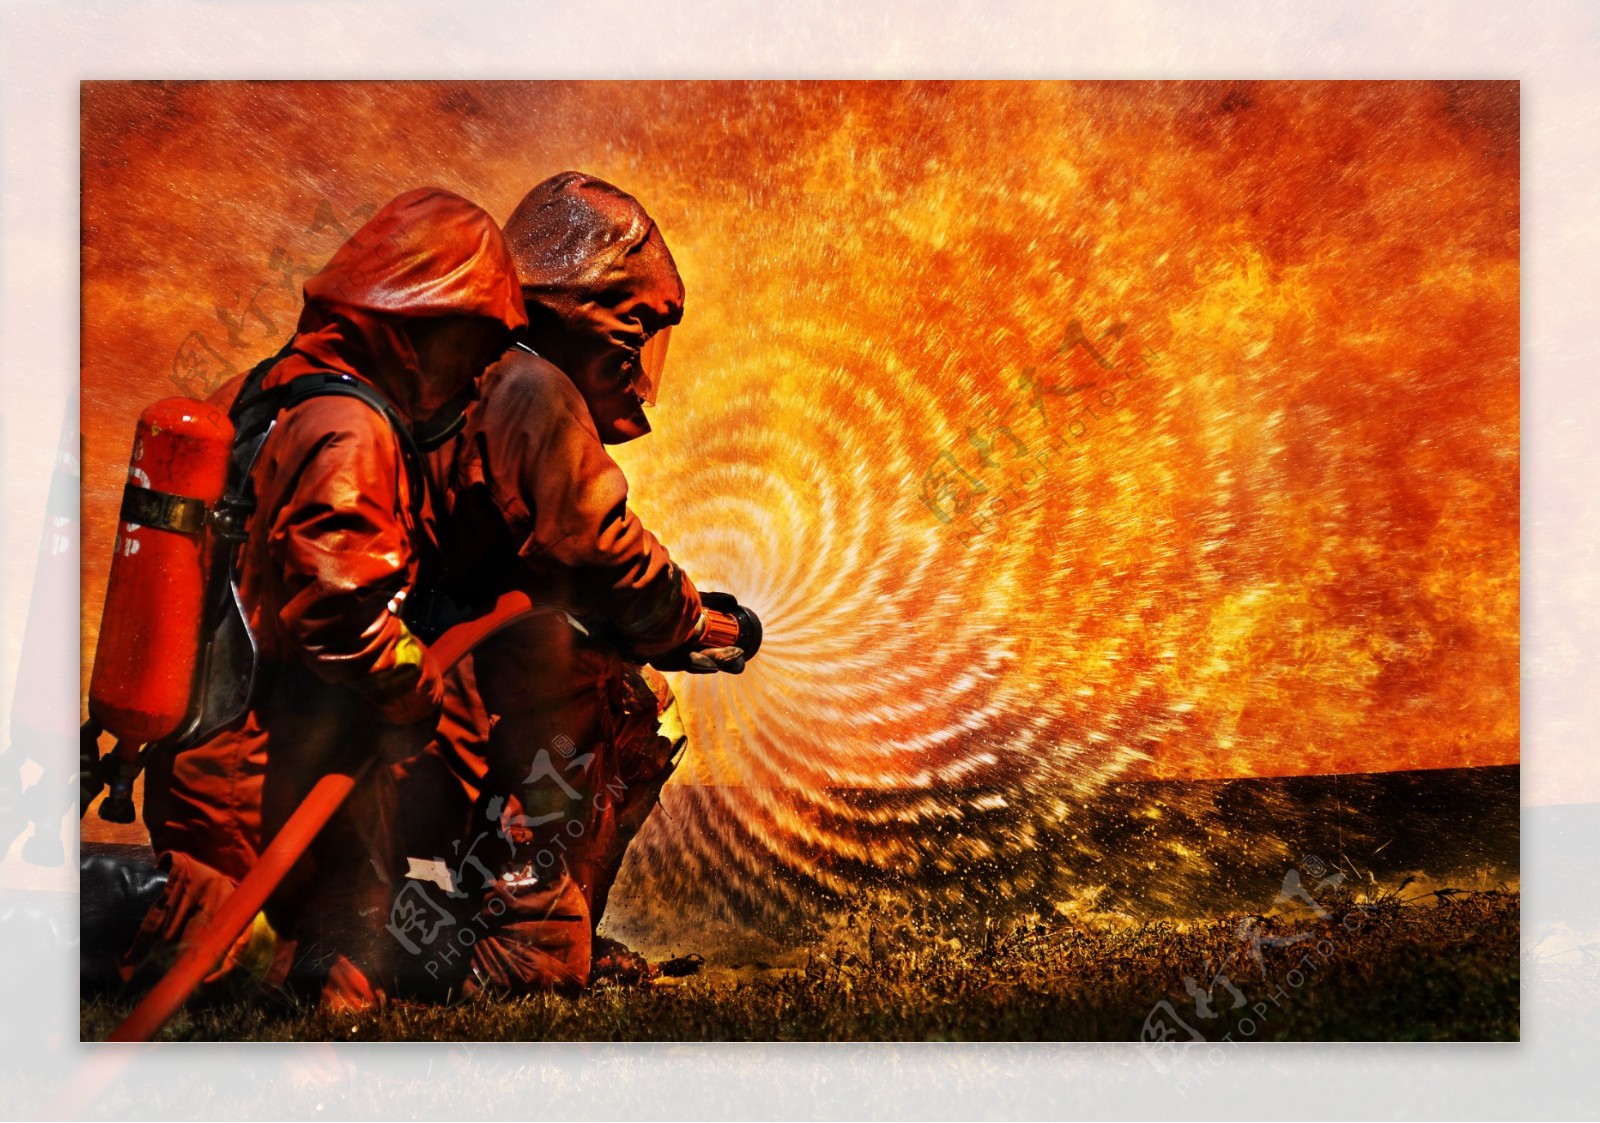 正在灭火的消防官兵图片